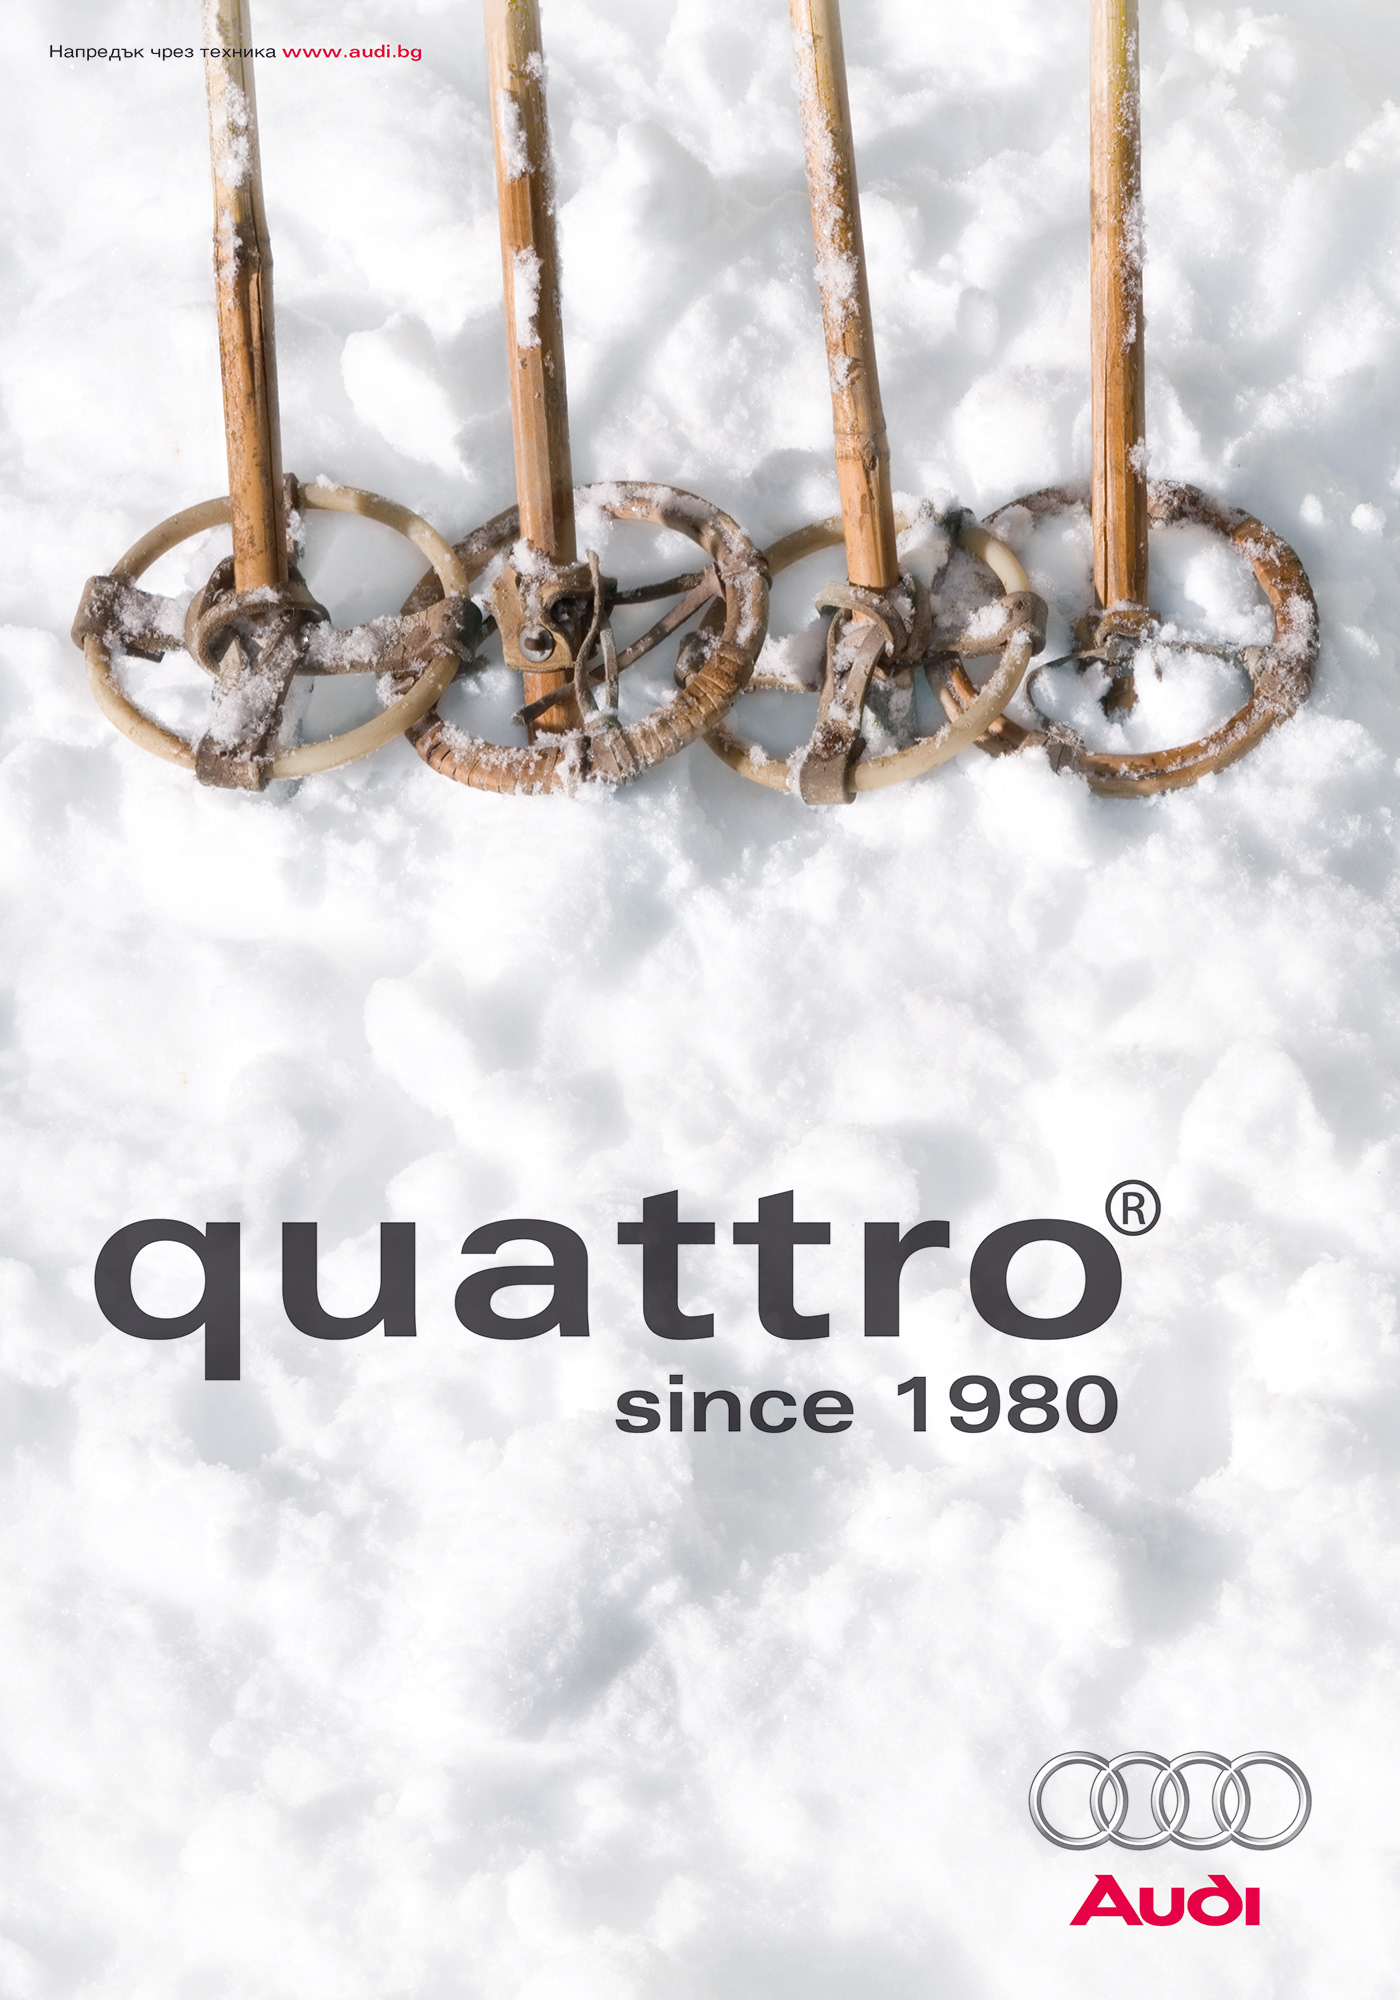 Audi quattro® stick ski stick Ski winter snow